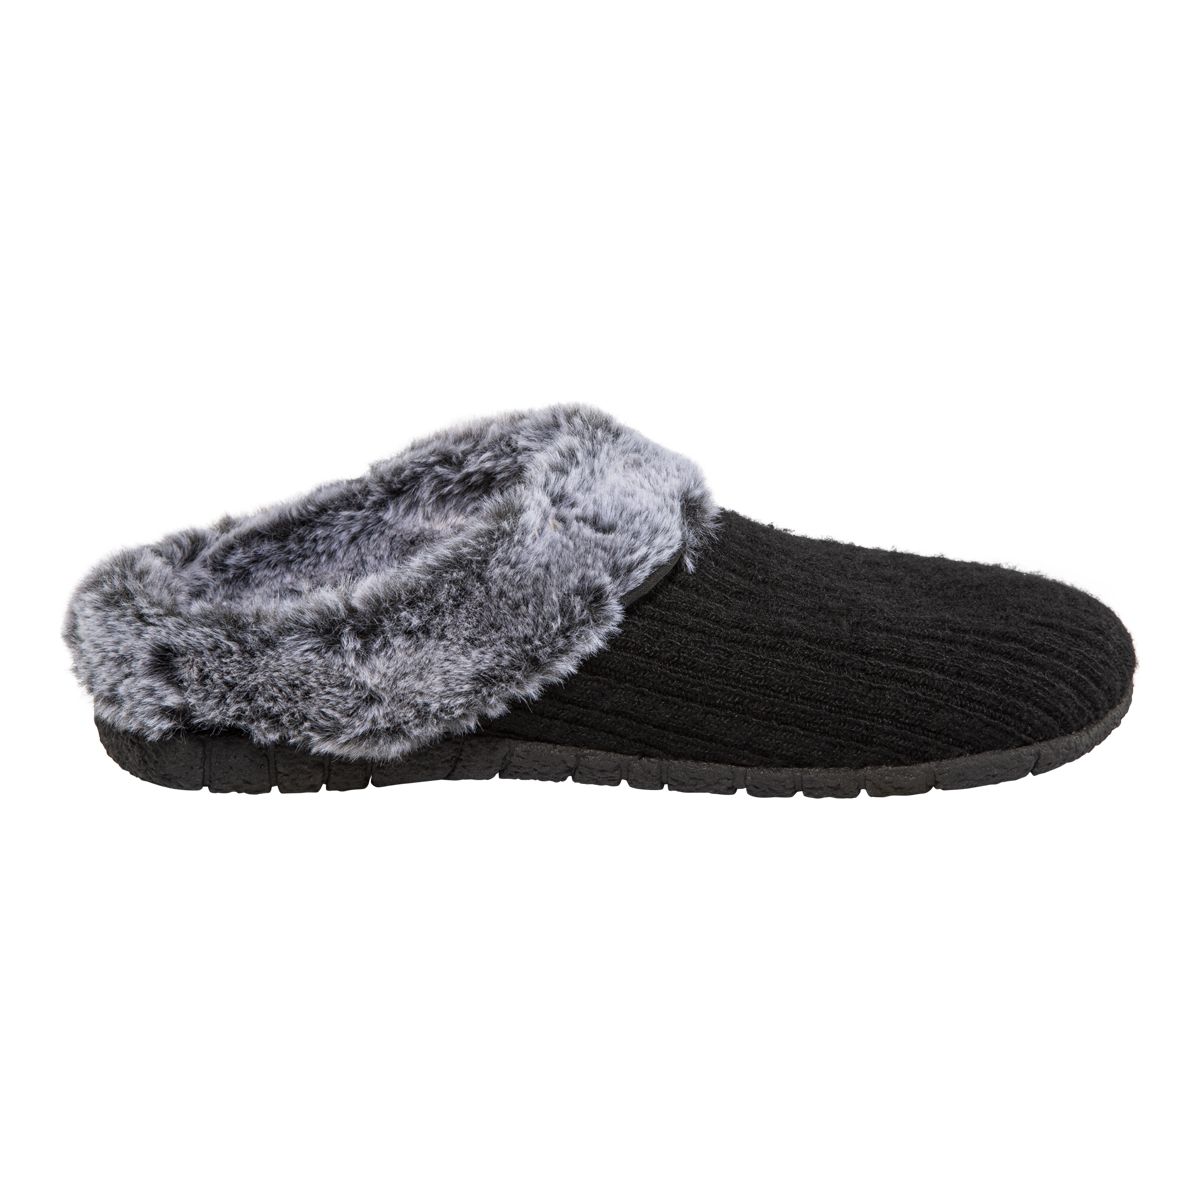 Ripzone Women's Cora Slippers  Slip On Open Heel Memory Foam Faux Fur Knit